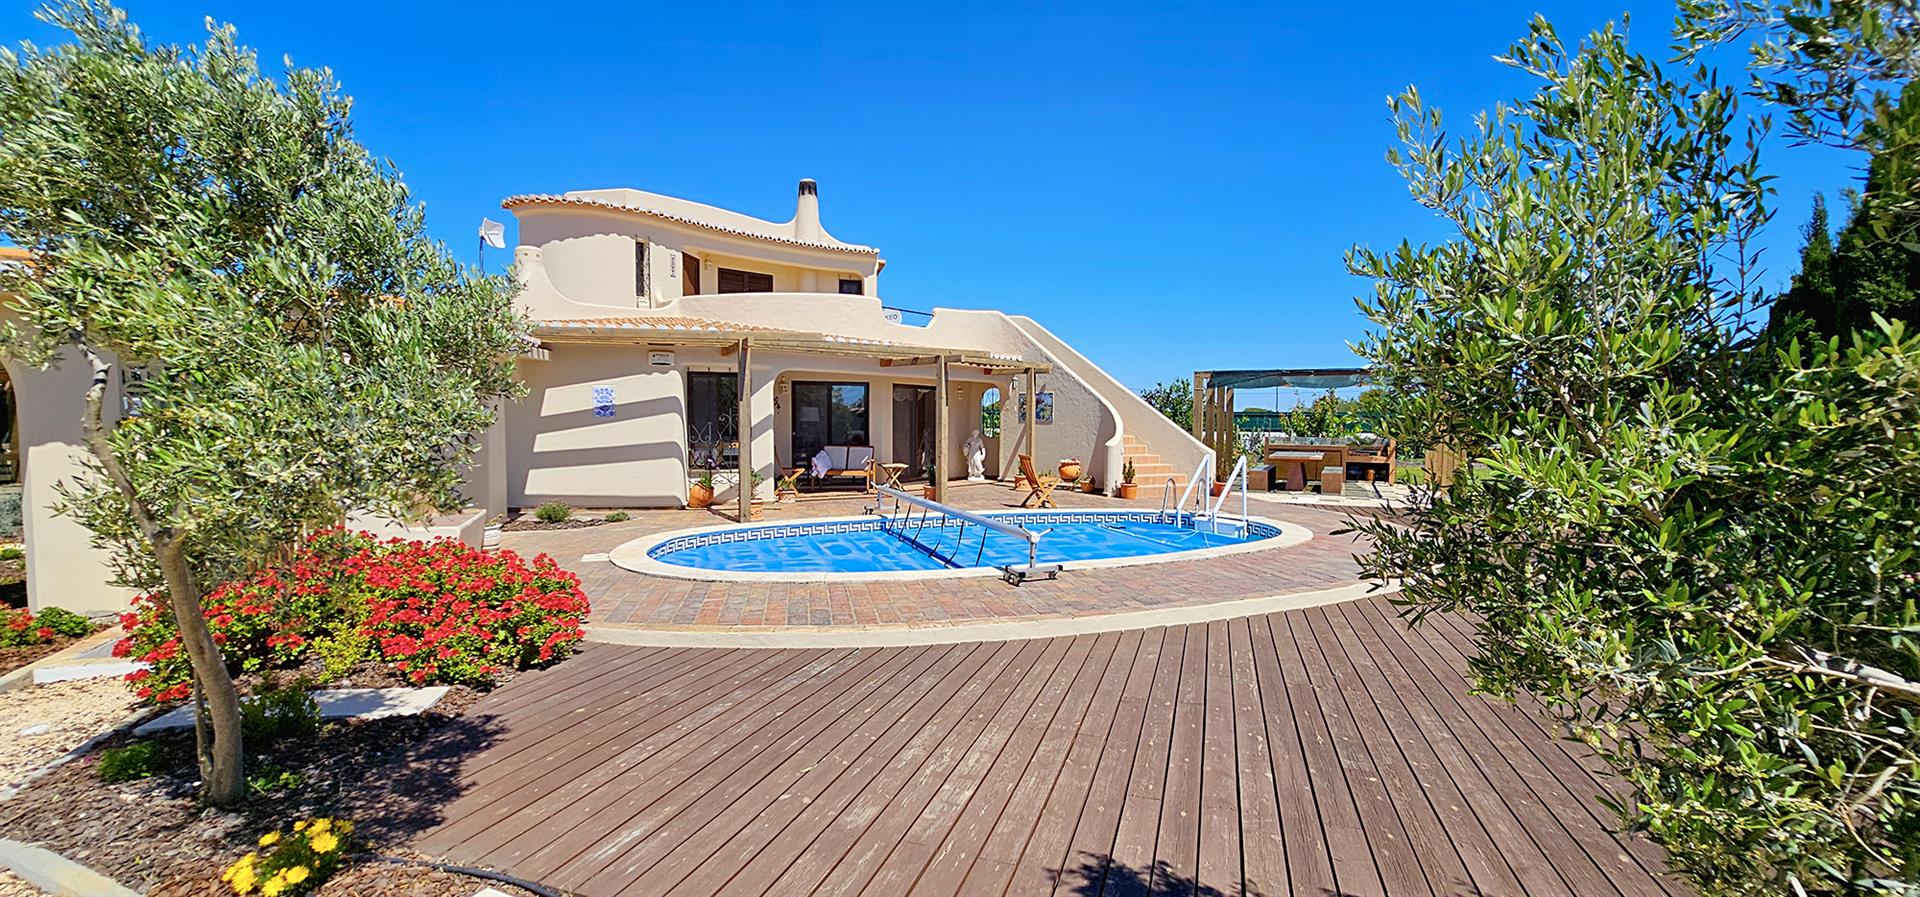 Welkom in uw toekomstige huis in de prachtige Algarve